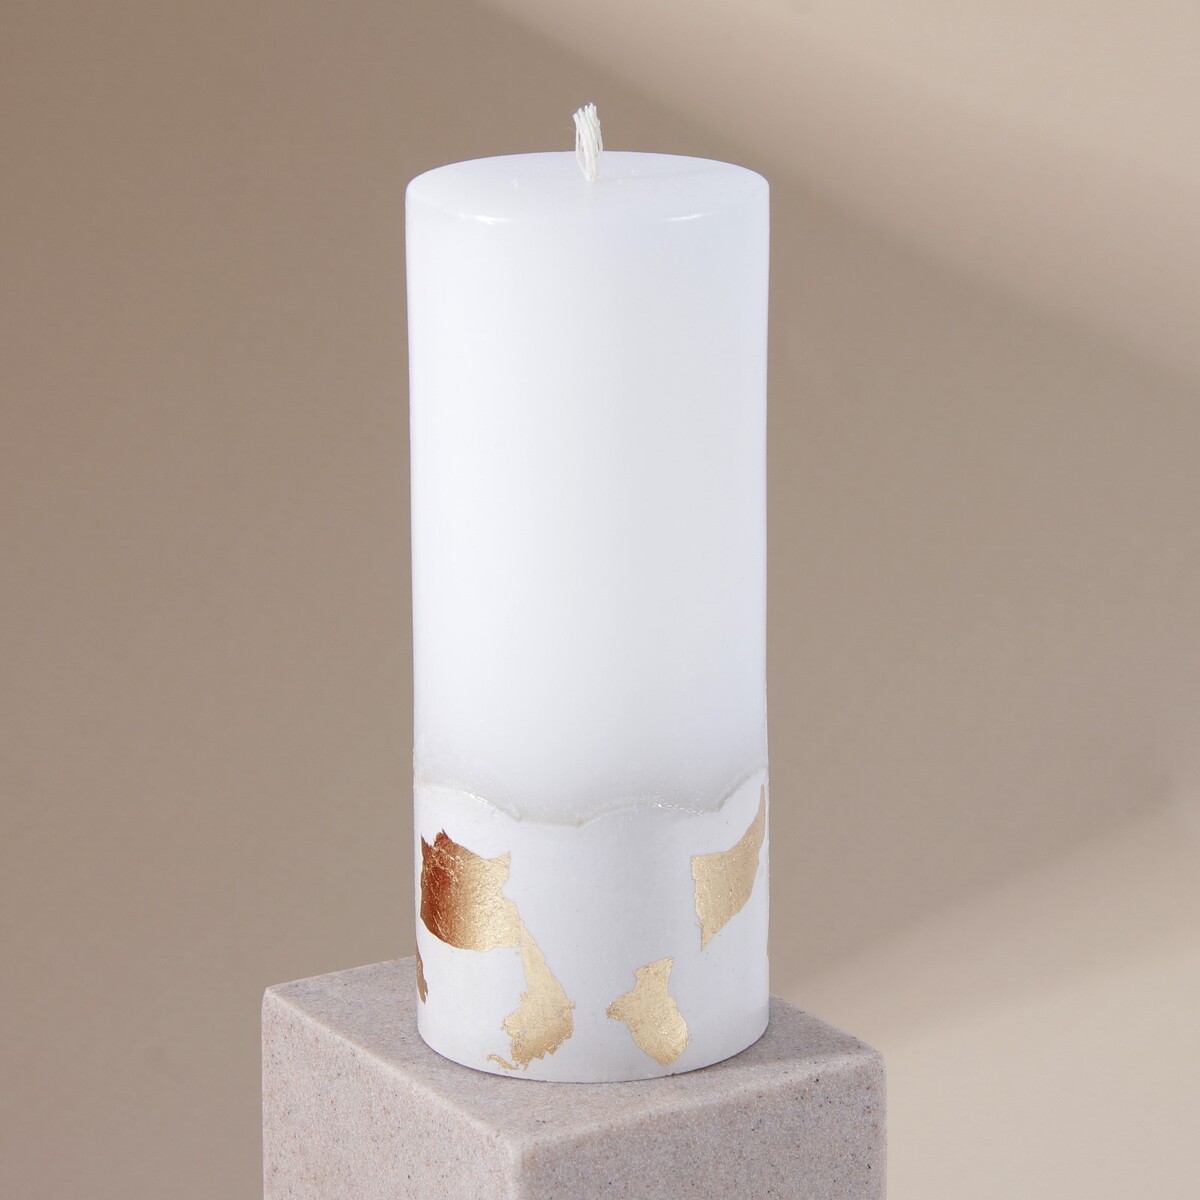 Свеча интерьерная белая с бетоном (поталь), 15 х 6 см свеча интерьерная женская фигура белая